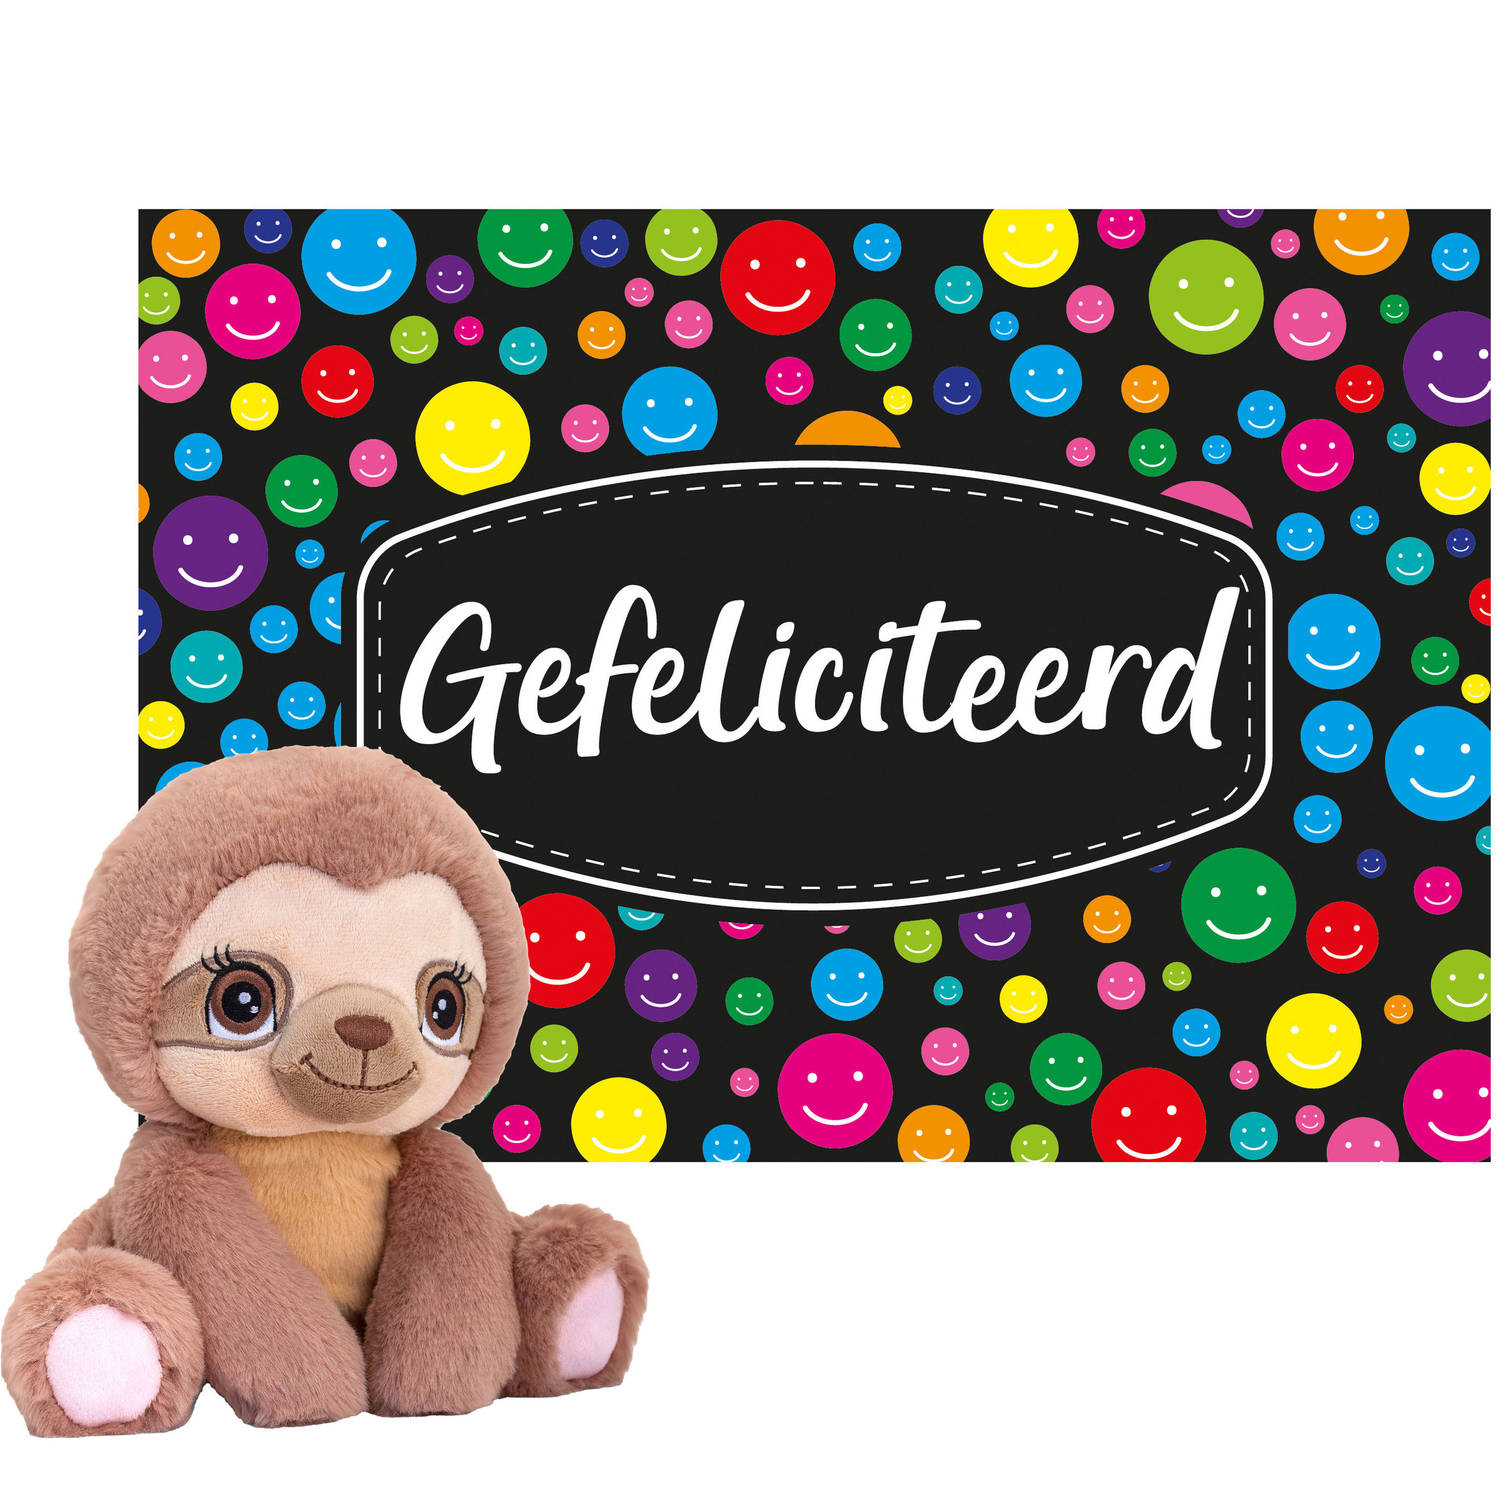 Keel toys Cadeaukaart Gefeliciteerd met knuffeldier luiaard 16 cm Knuffeldier